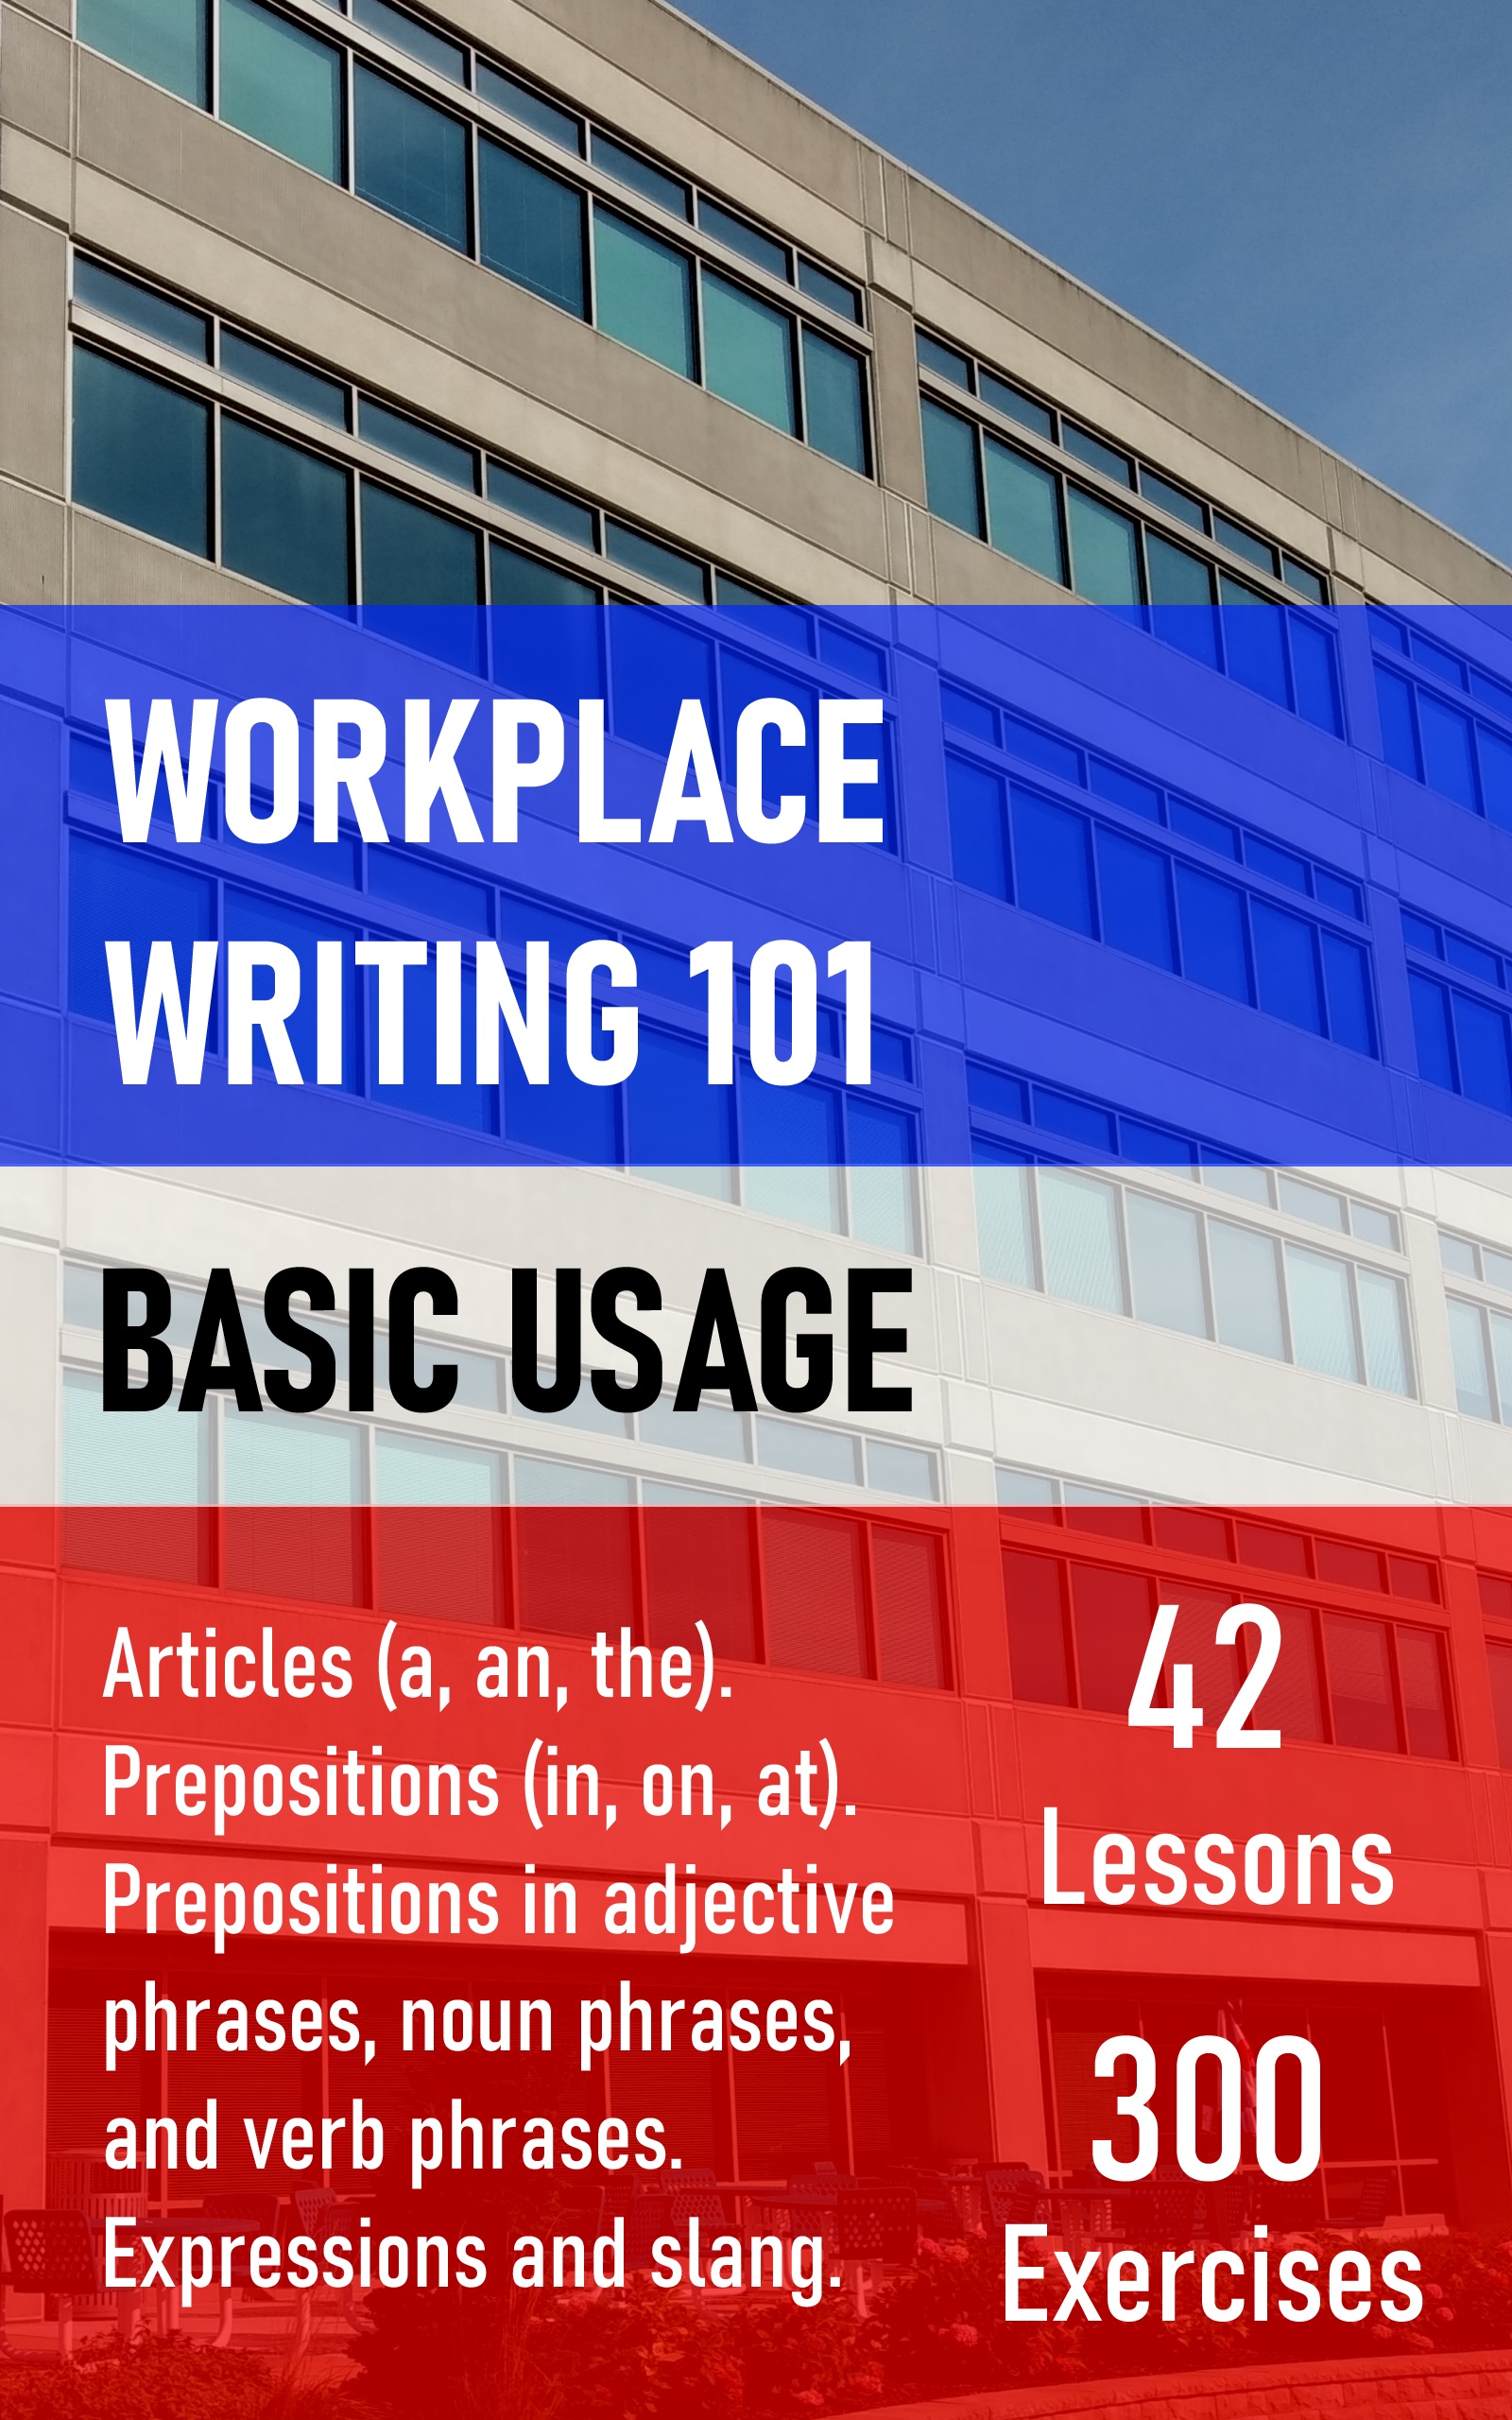 Workplace Writing 101 - Basic Usage